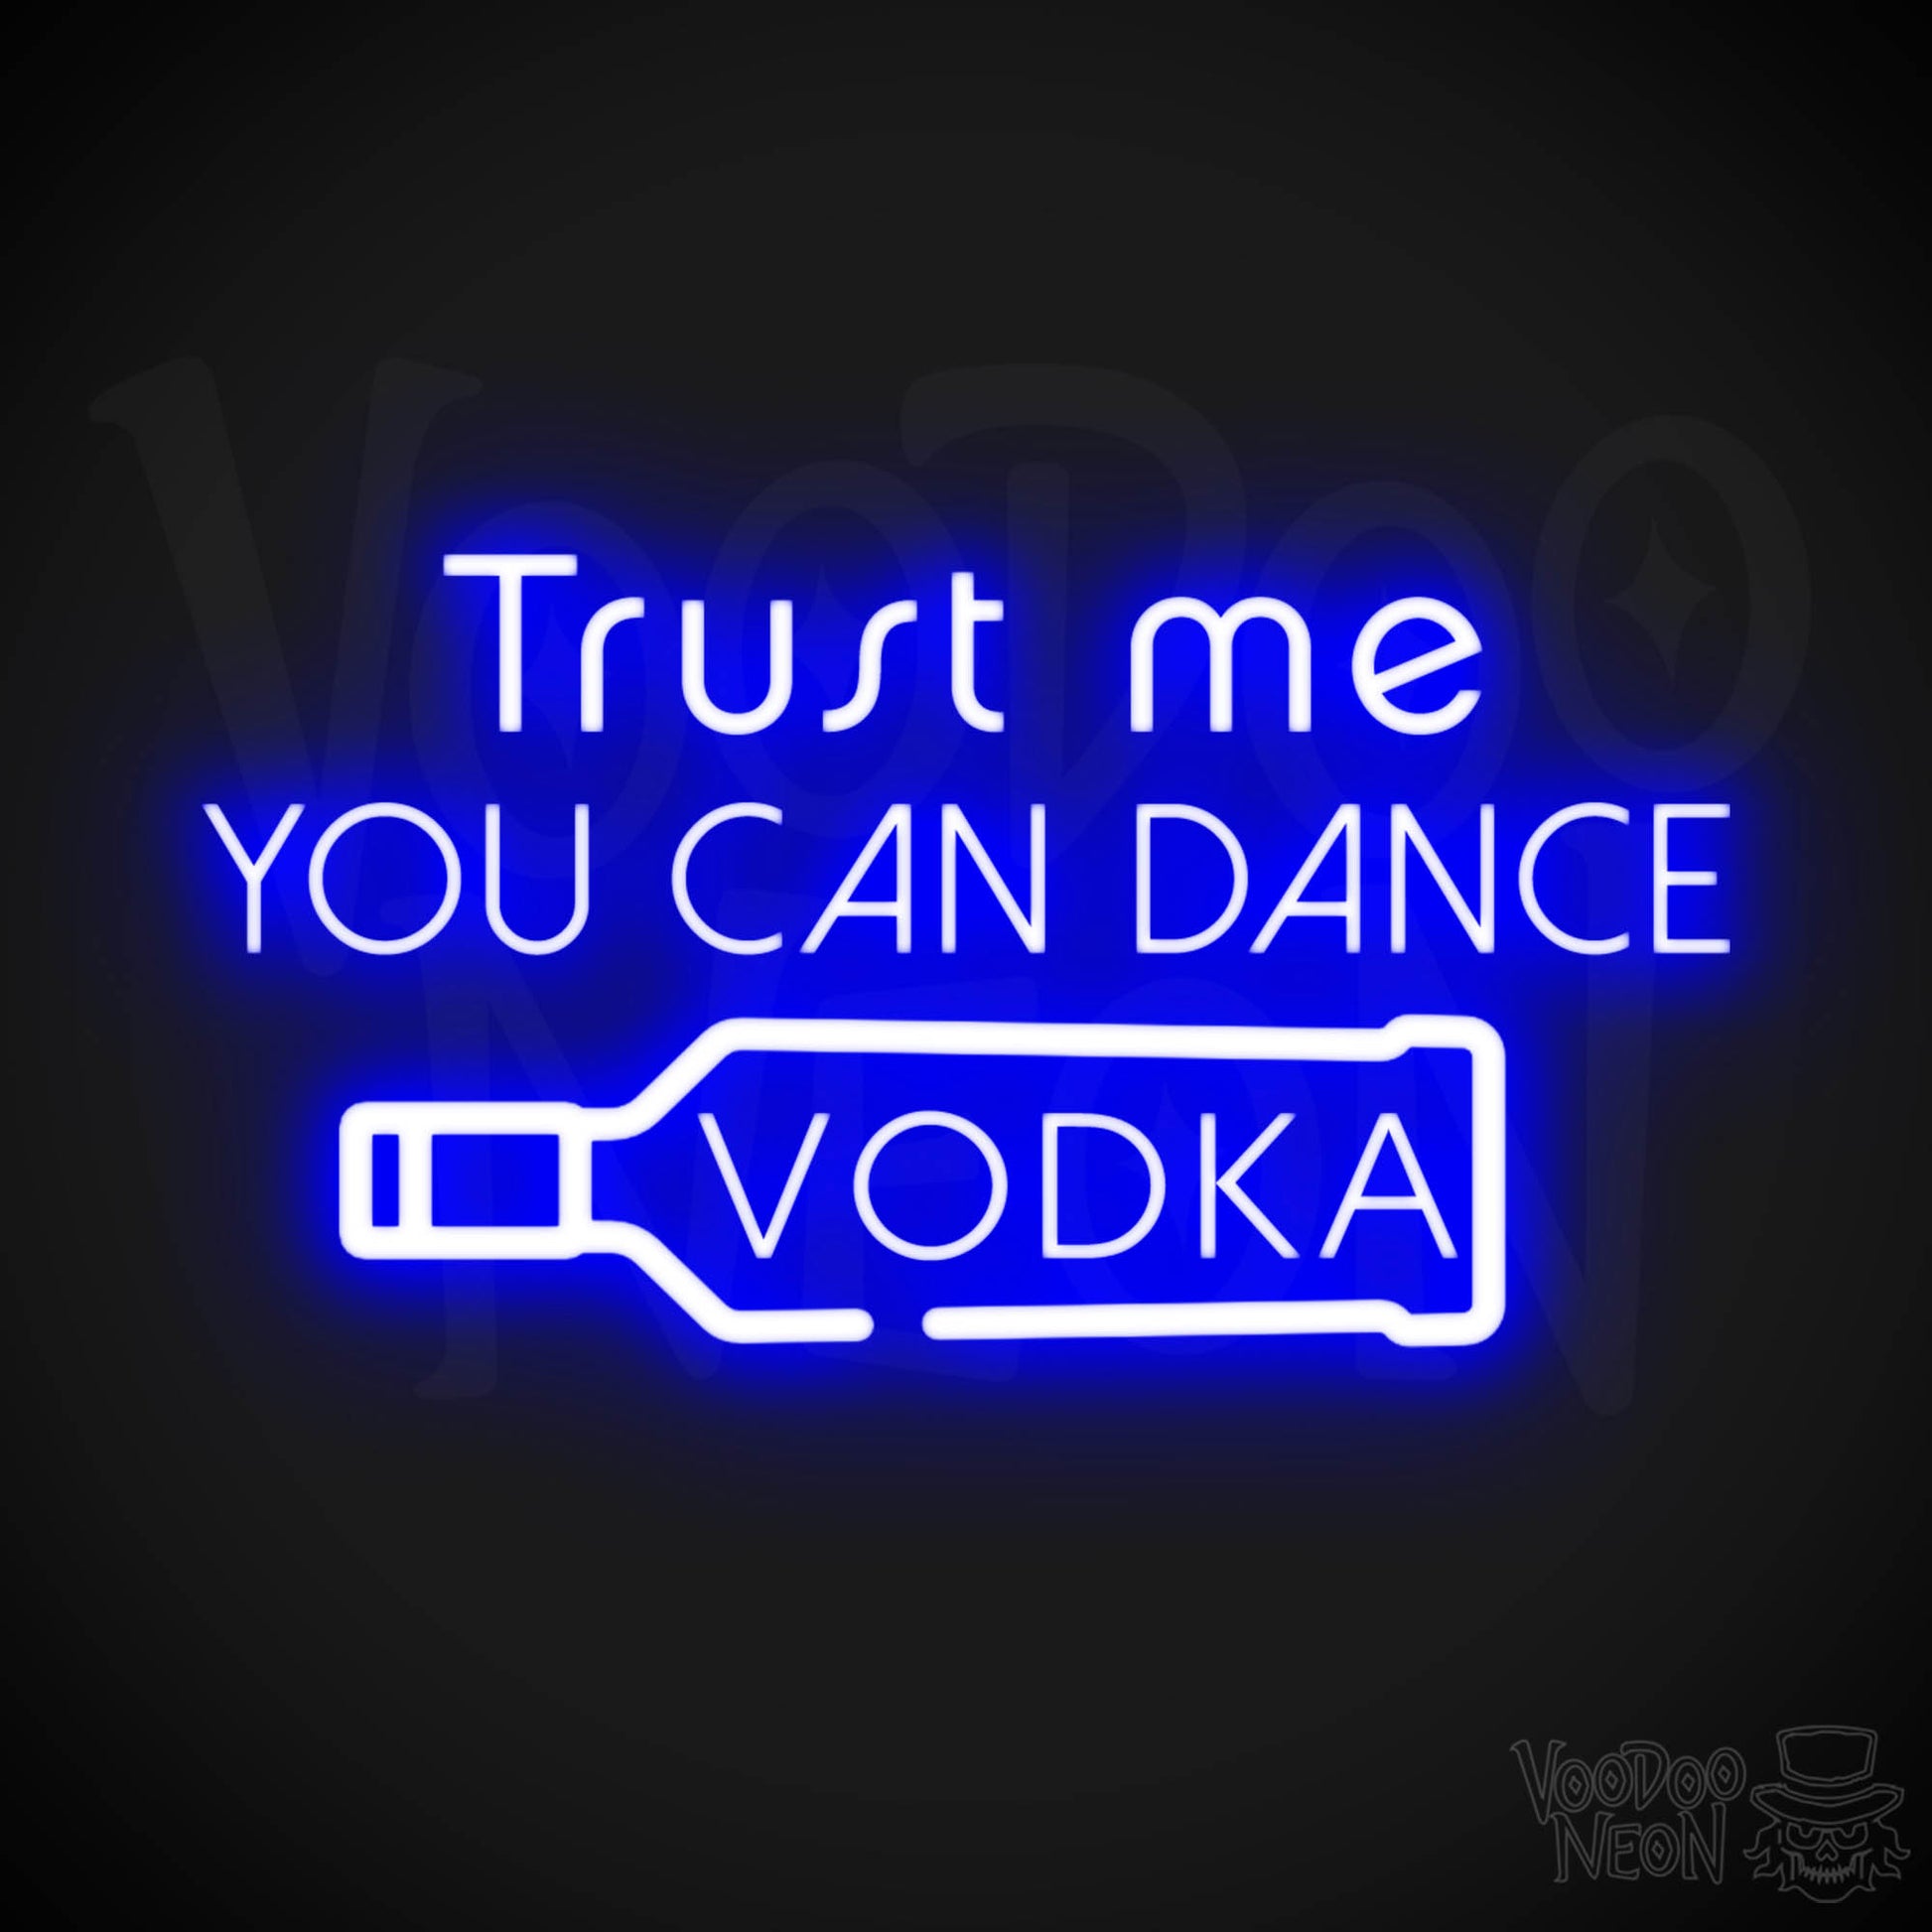 Trust Me You Can Dance Vodka Neon Sign - Vodka Bar Sign - LED Signs - Color Dark Blue